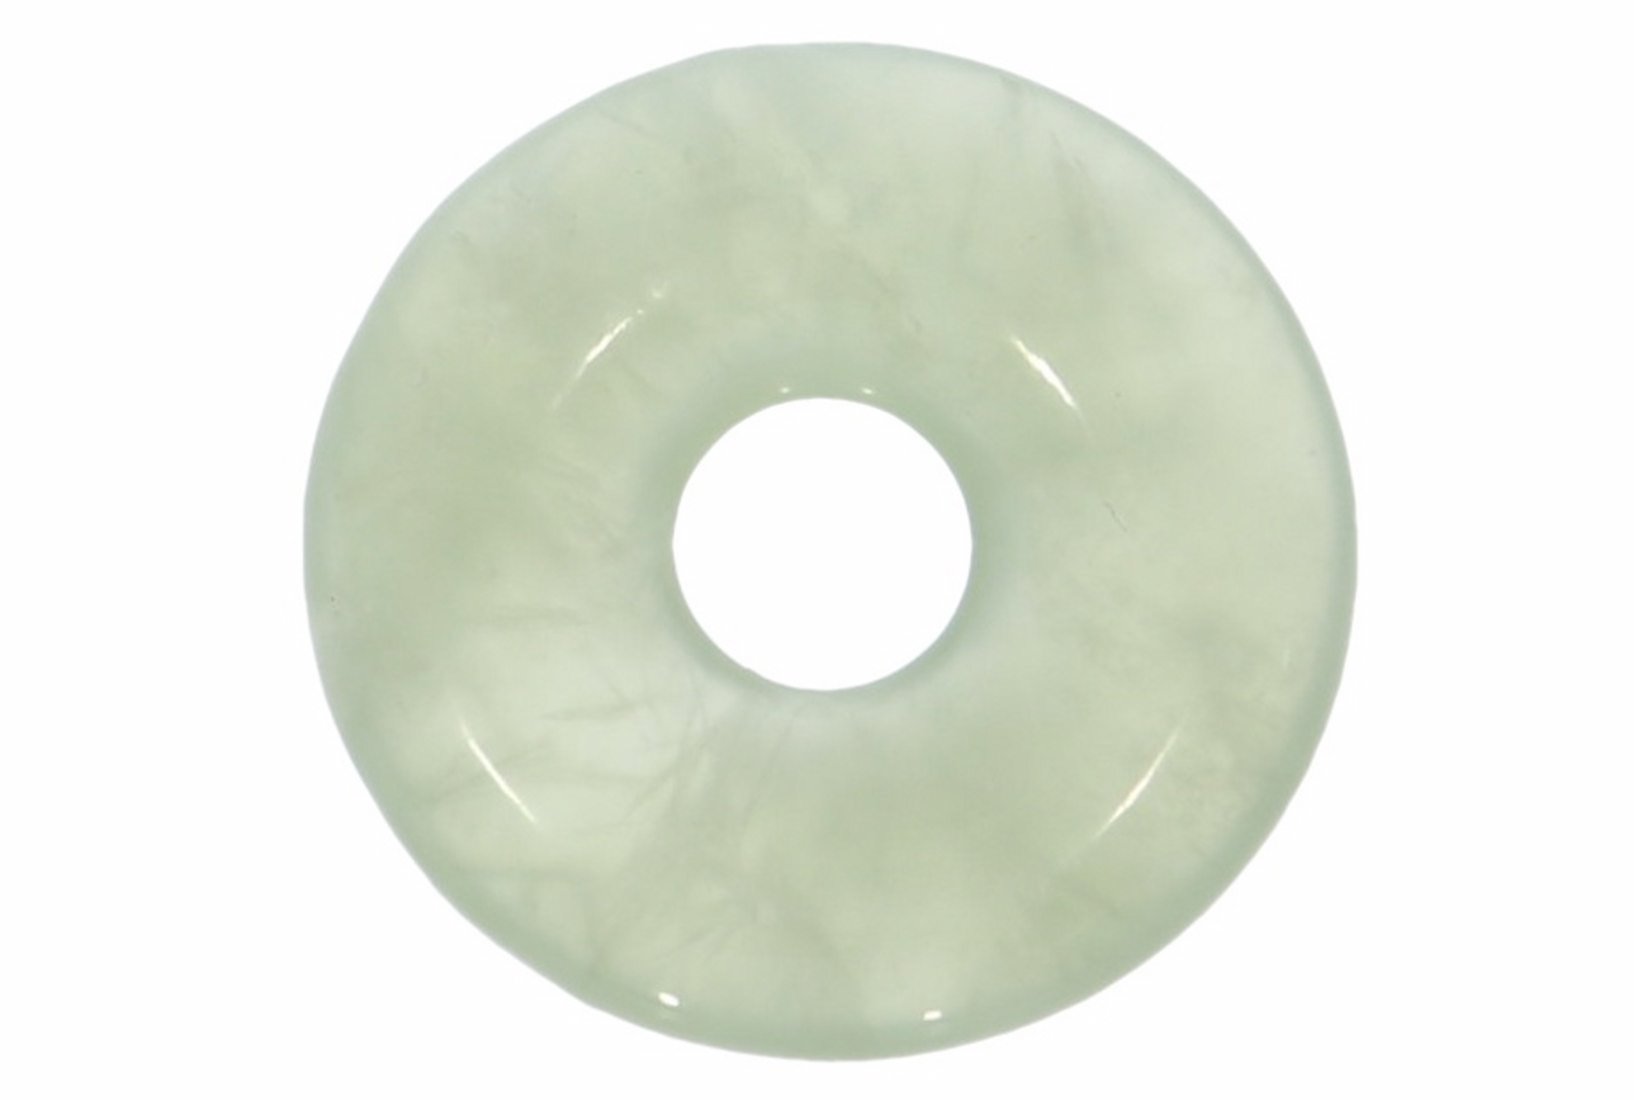 China Jade Donut Schmuck Anhänger 20mm & Donut Halter Silber HS1595